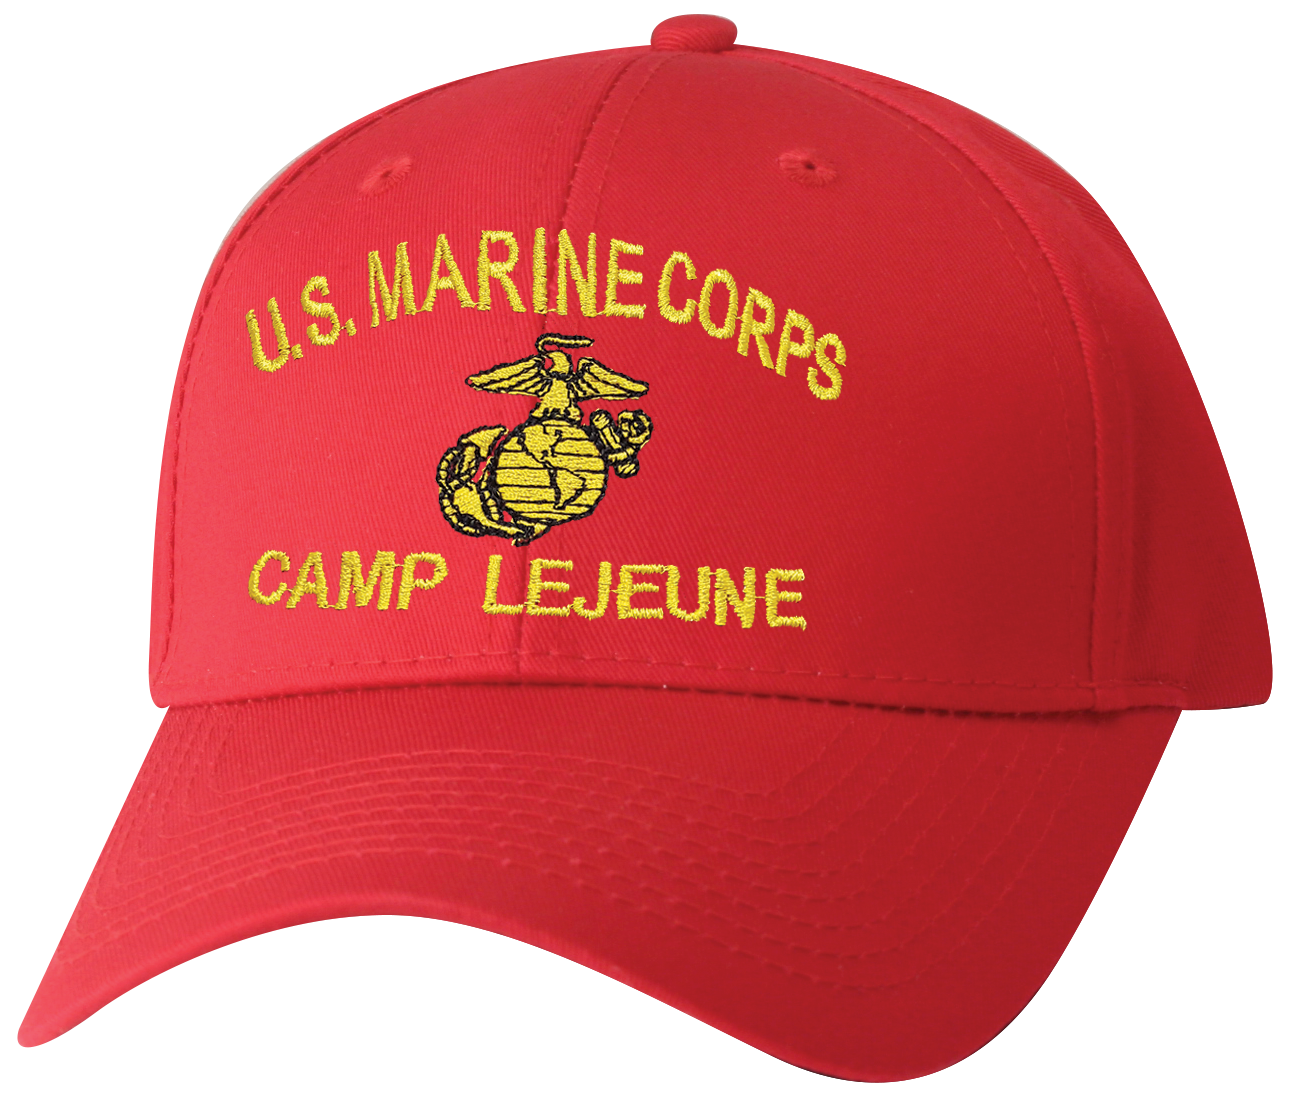 US Marine Corp Camp LeJeune Ball Cap